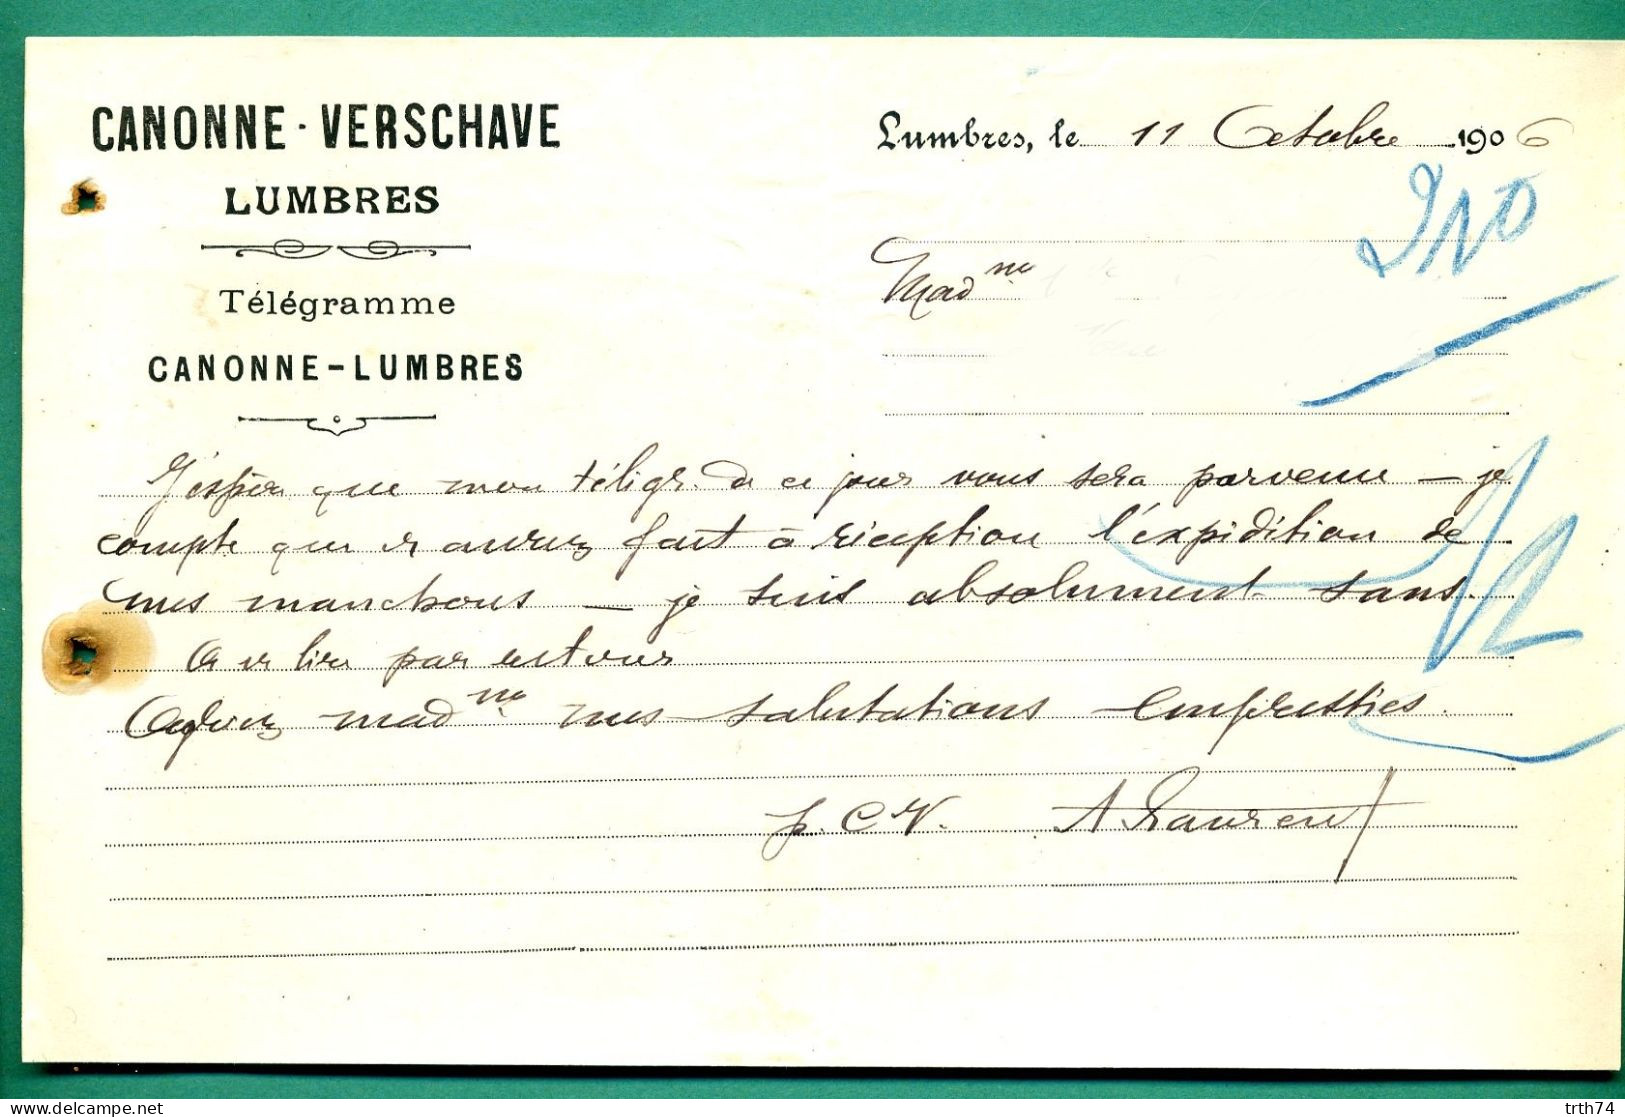 62 Lumbres Canonne Verschare 11 Octobre 1906 - Imprimerie & Papeterie